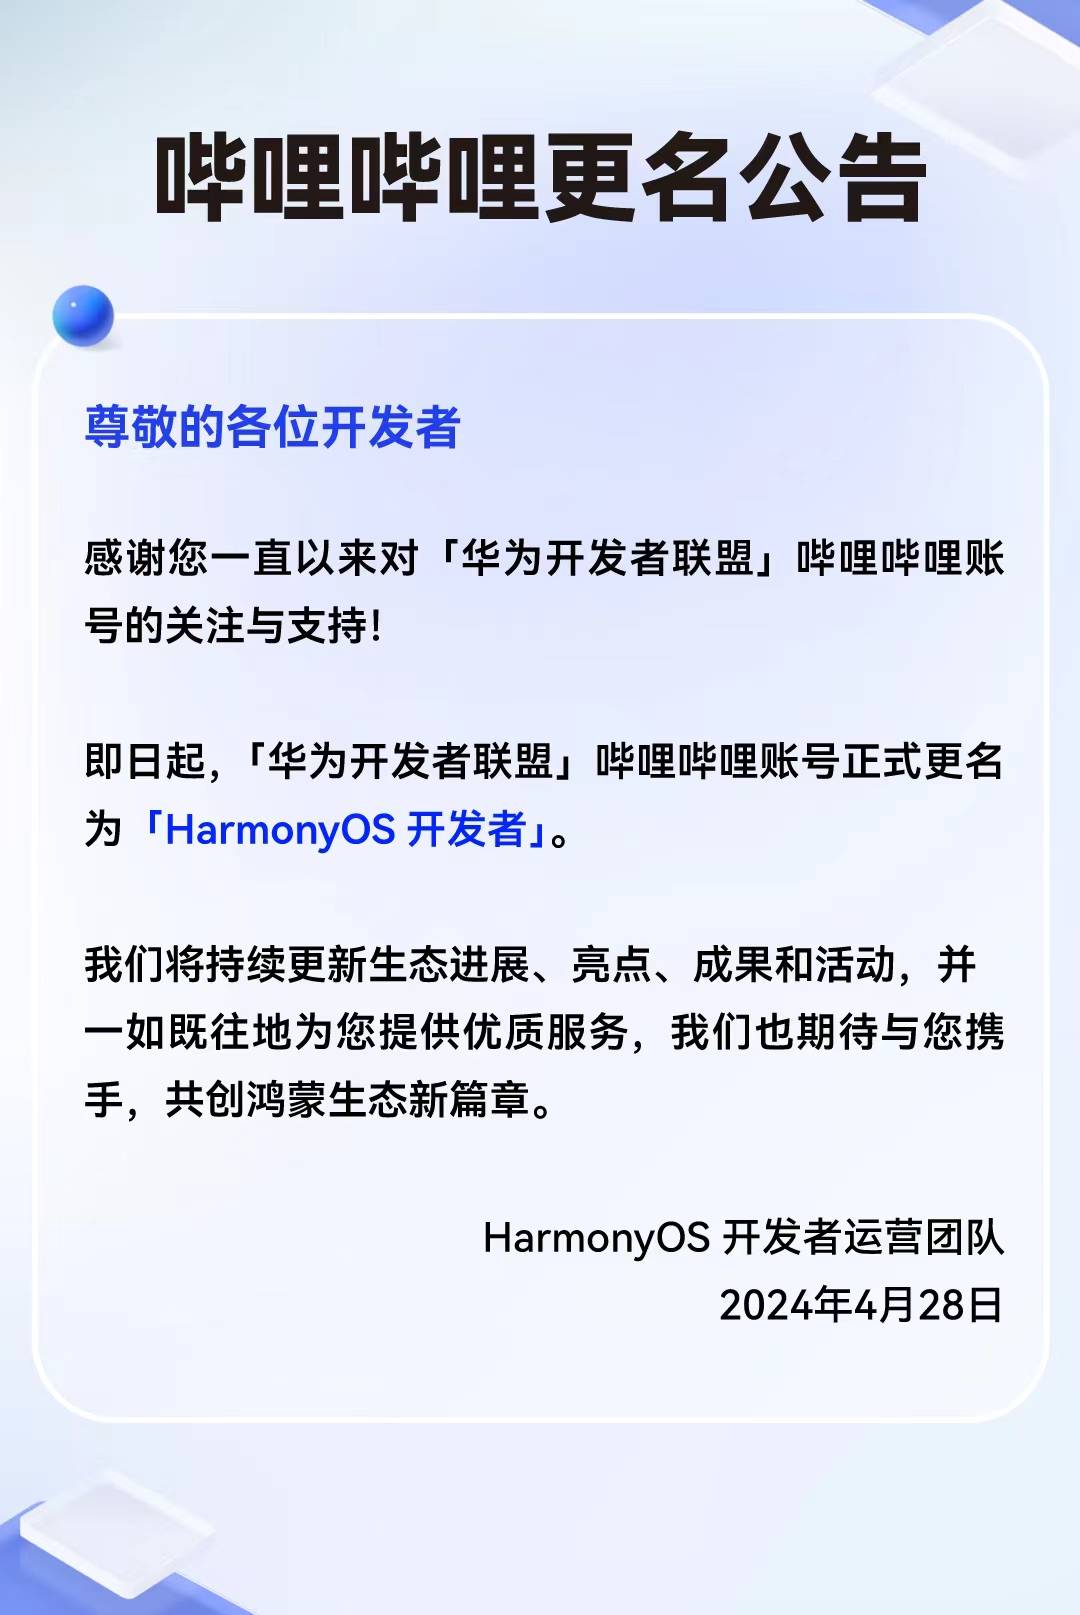 「华为开发者联盟」官方b站账号更名为「harmonyos 开发者」